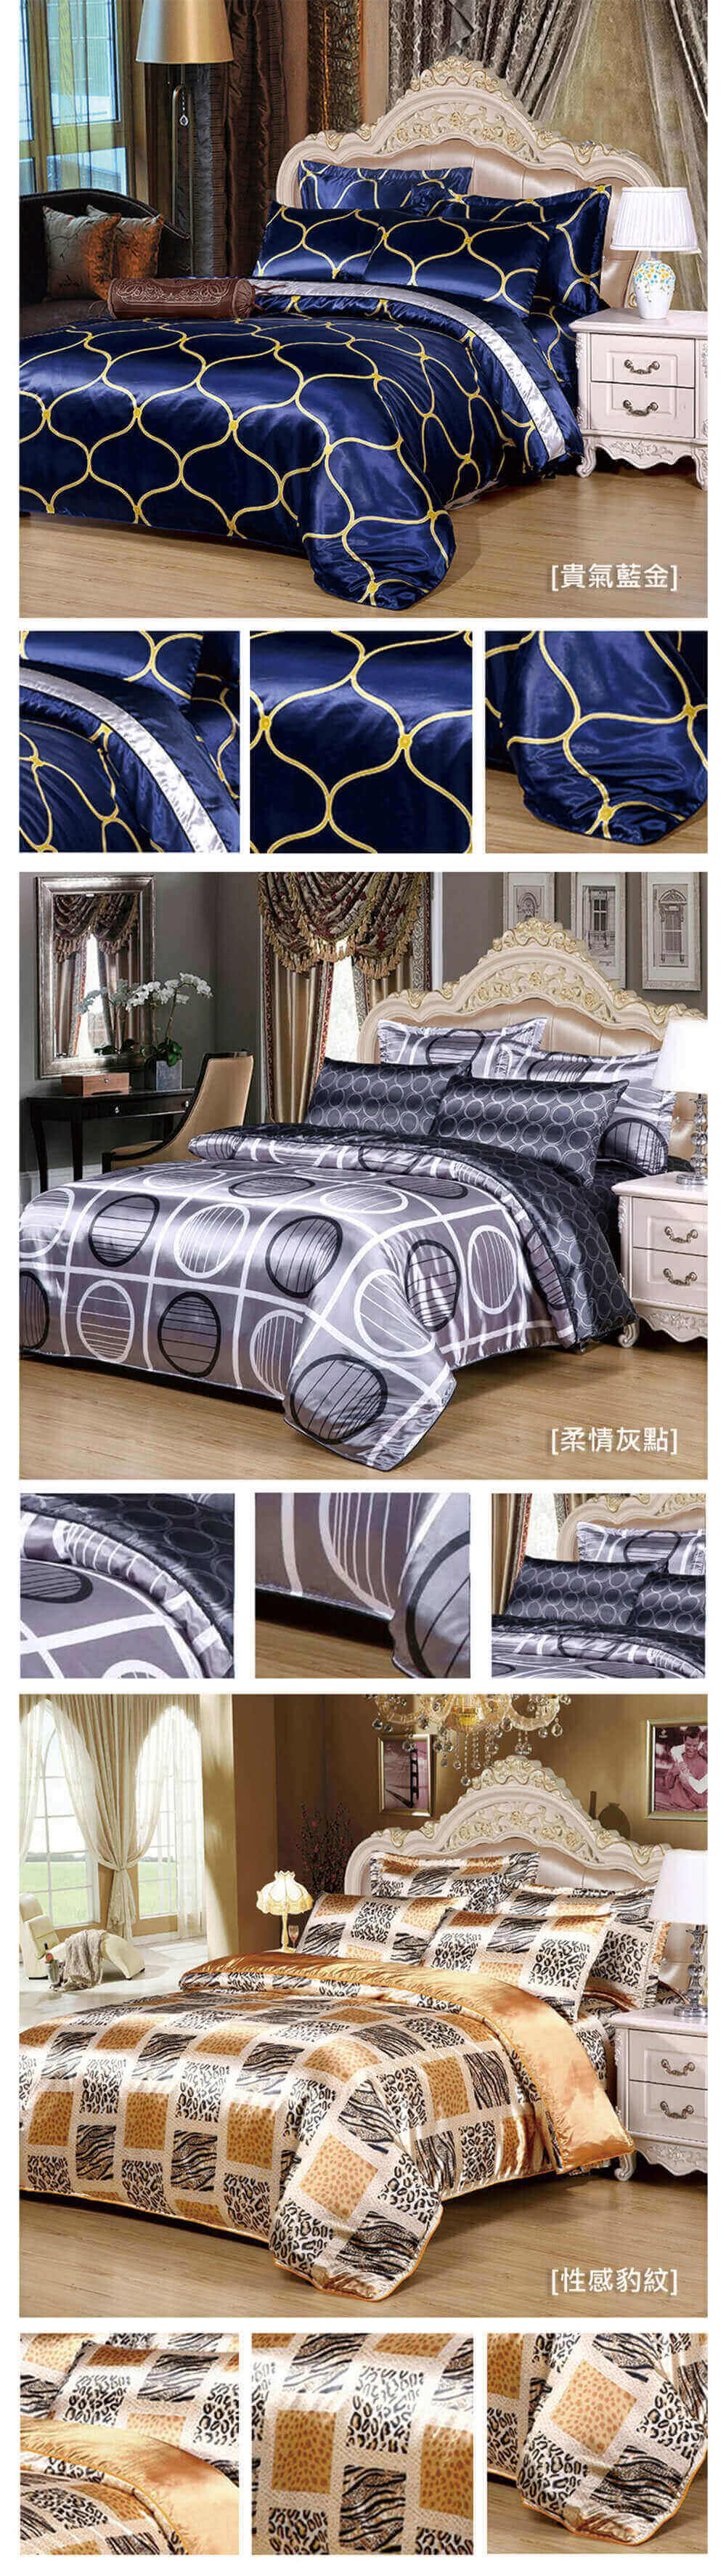 18nino81 單人 雙人 加大均一特價 歐式緞面絲綢涼感床包舖棉兩用被四件床包組8色可選 Momo購物網